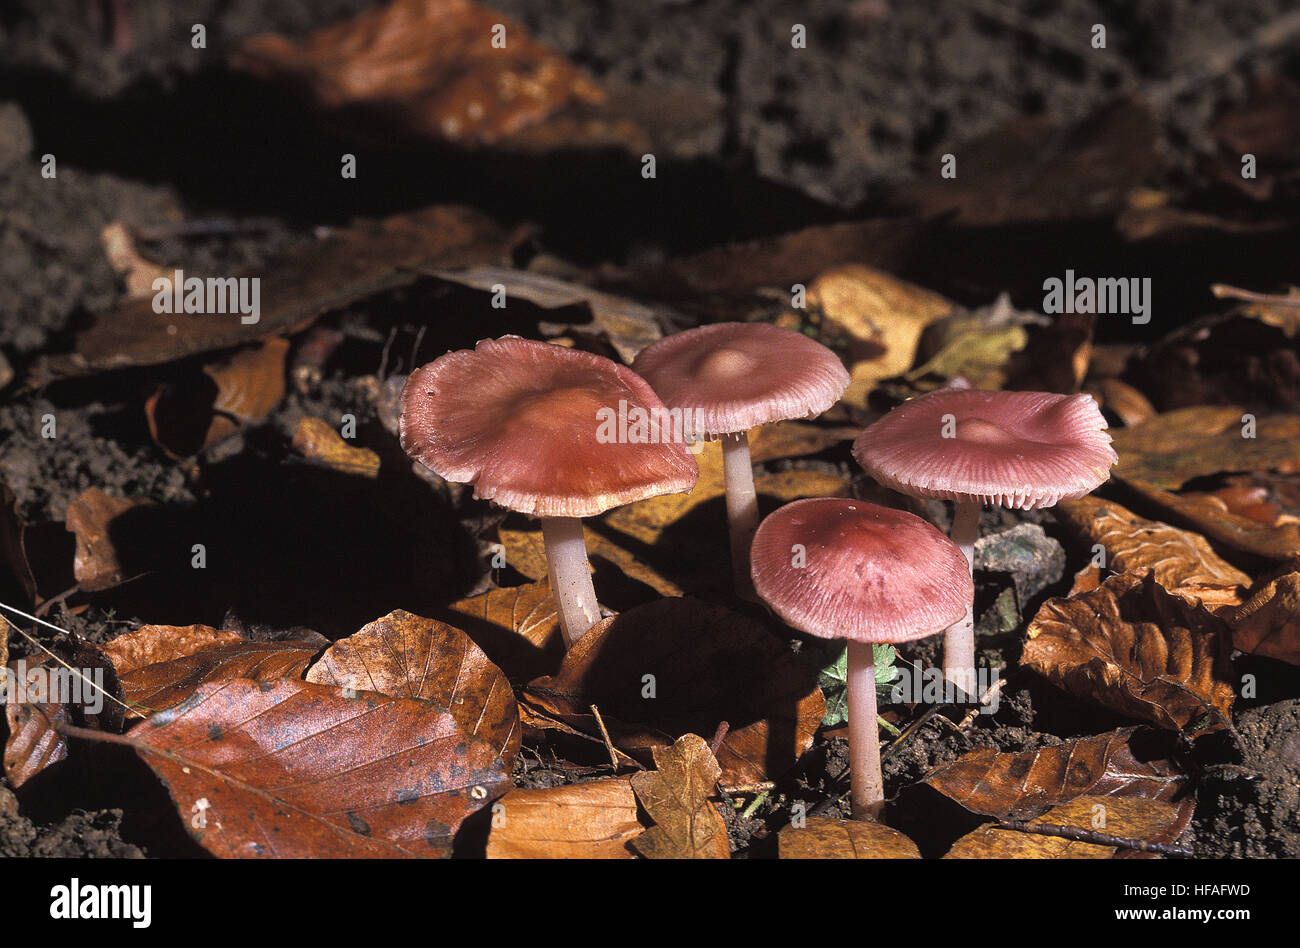 Bonnet rose mycena rosea, champignons, champignons vénéneux Banque D'Images